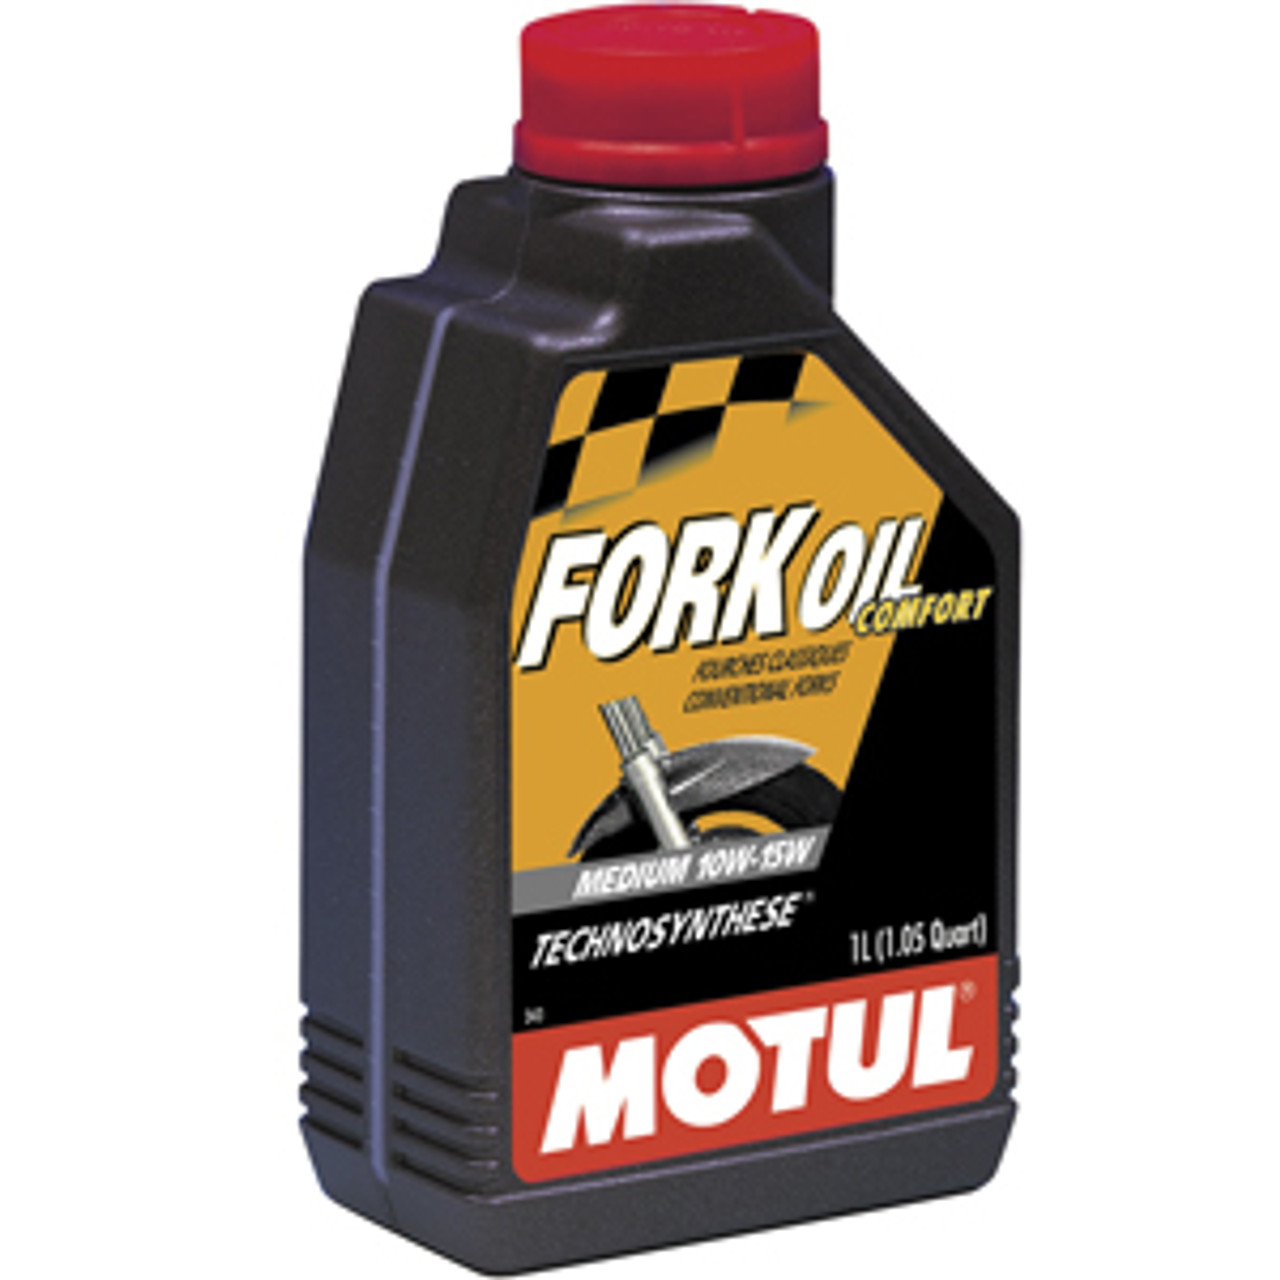 Motul Expert Fork Oil